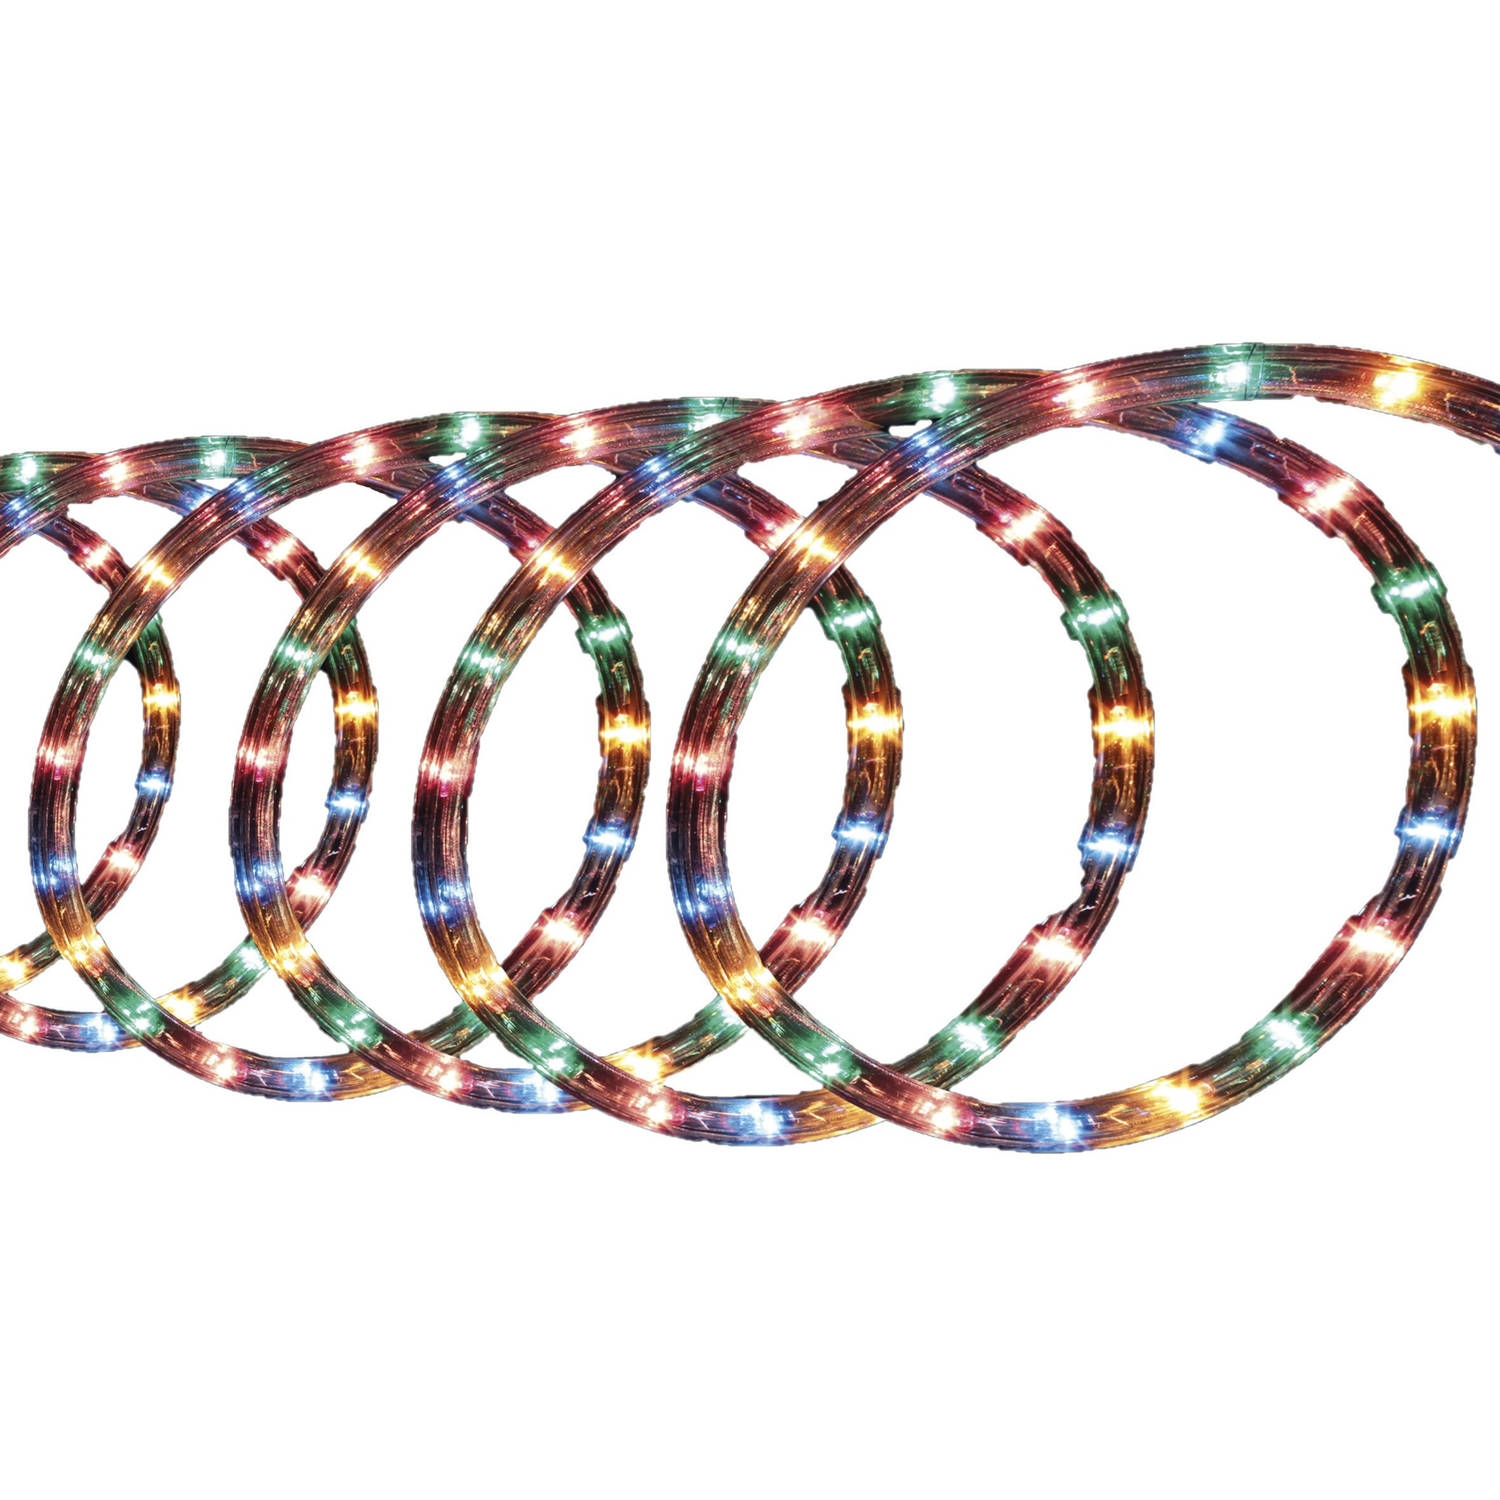 Lichtslang/slangverlichting 10 Meter Met 180 Lampjes Gekleurd - Lichtslangen